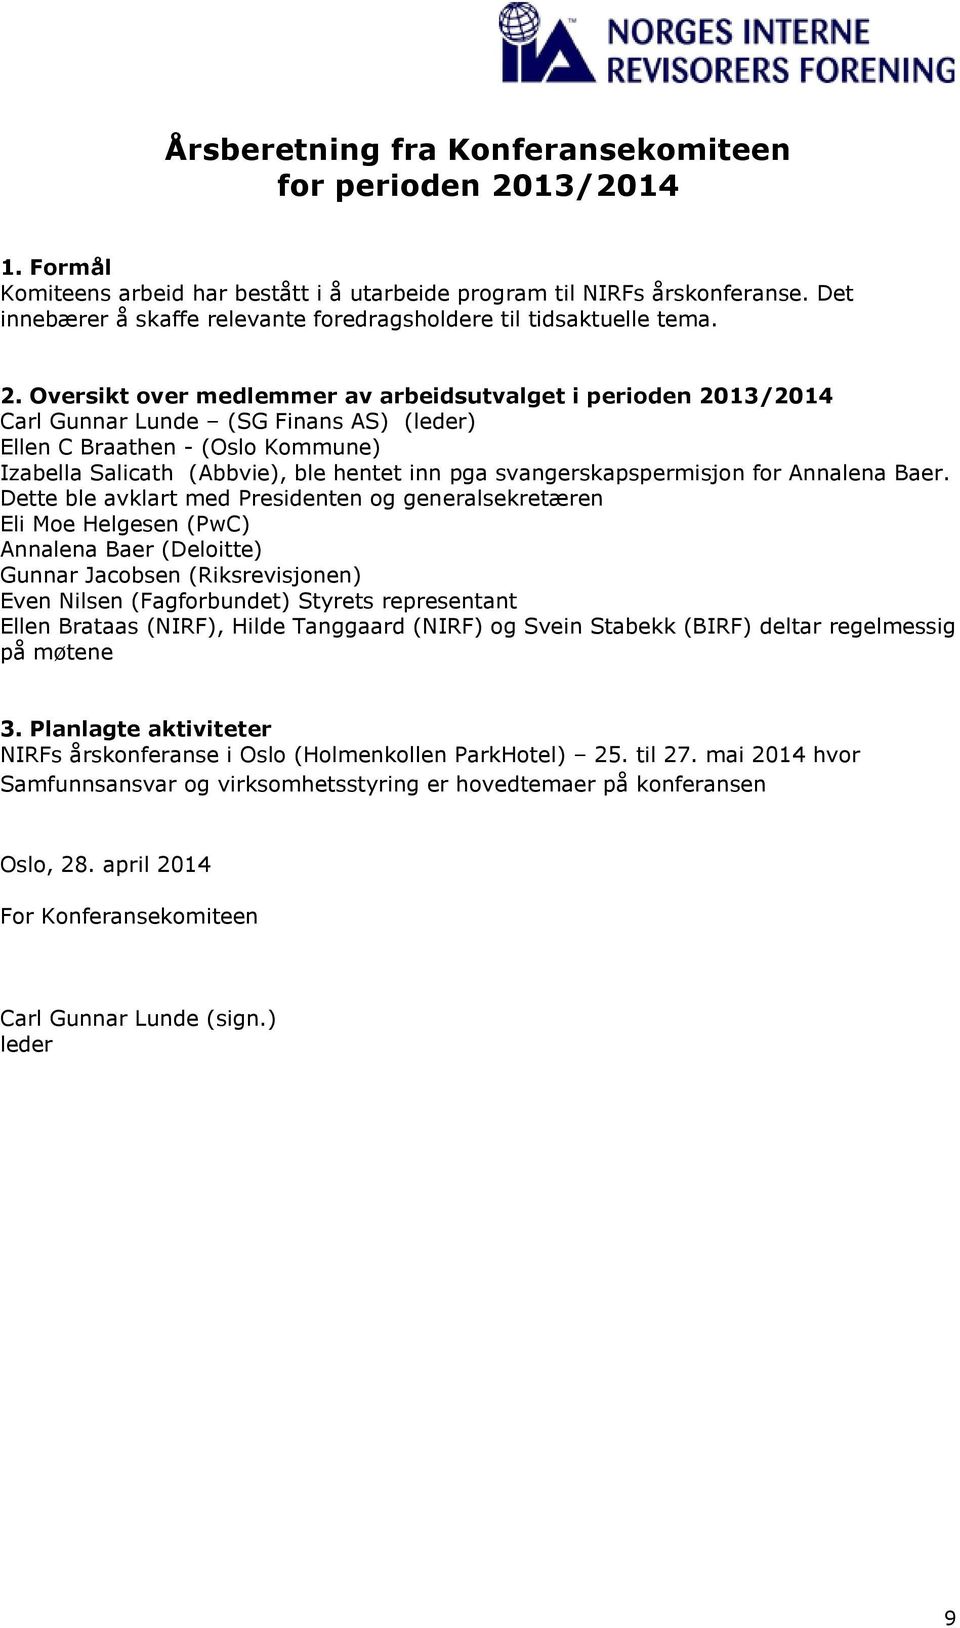 Oversikt over medlemmer av arbeidsutvalget i perioden 2013/2014 Carl Gunnar Lunde (SG Finans AS) (leder) Ellen C Braathen - (Oslo Kommune) Izabella Salicath (Abbvie), ble hentet inn pga